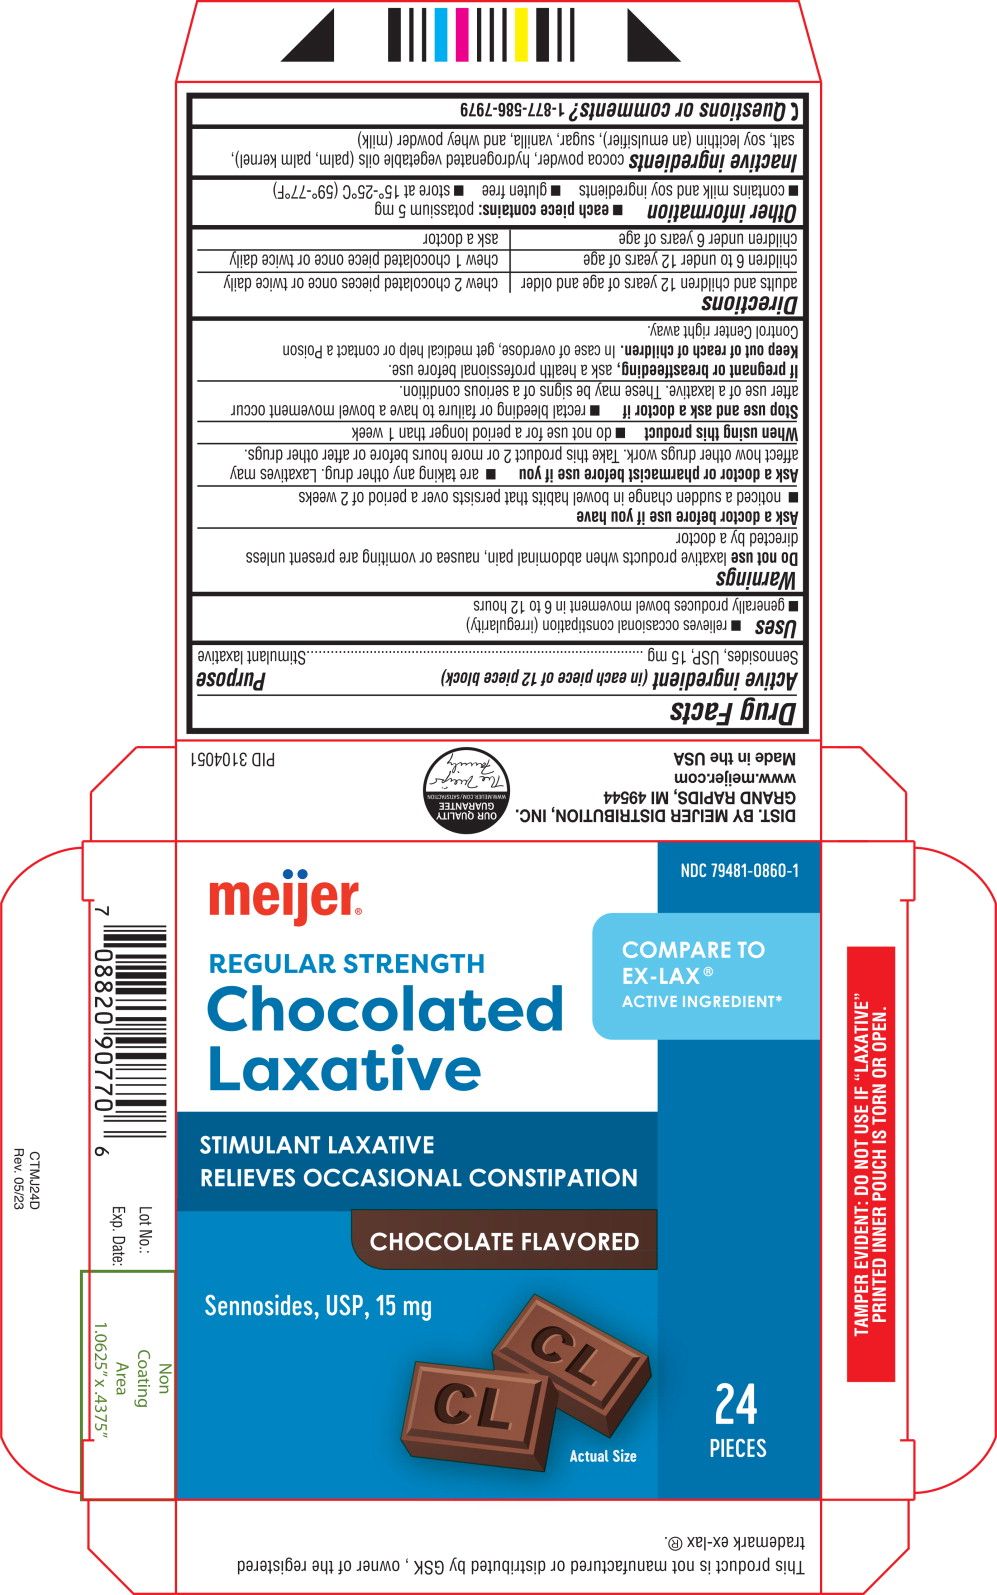 Principal Display Panel - 15 mg Carton Label
